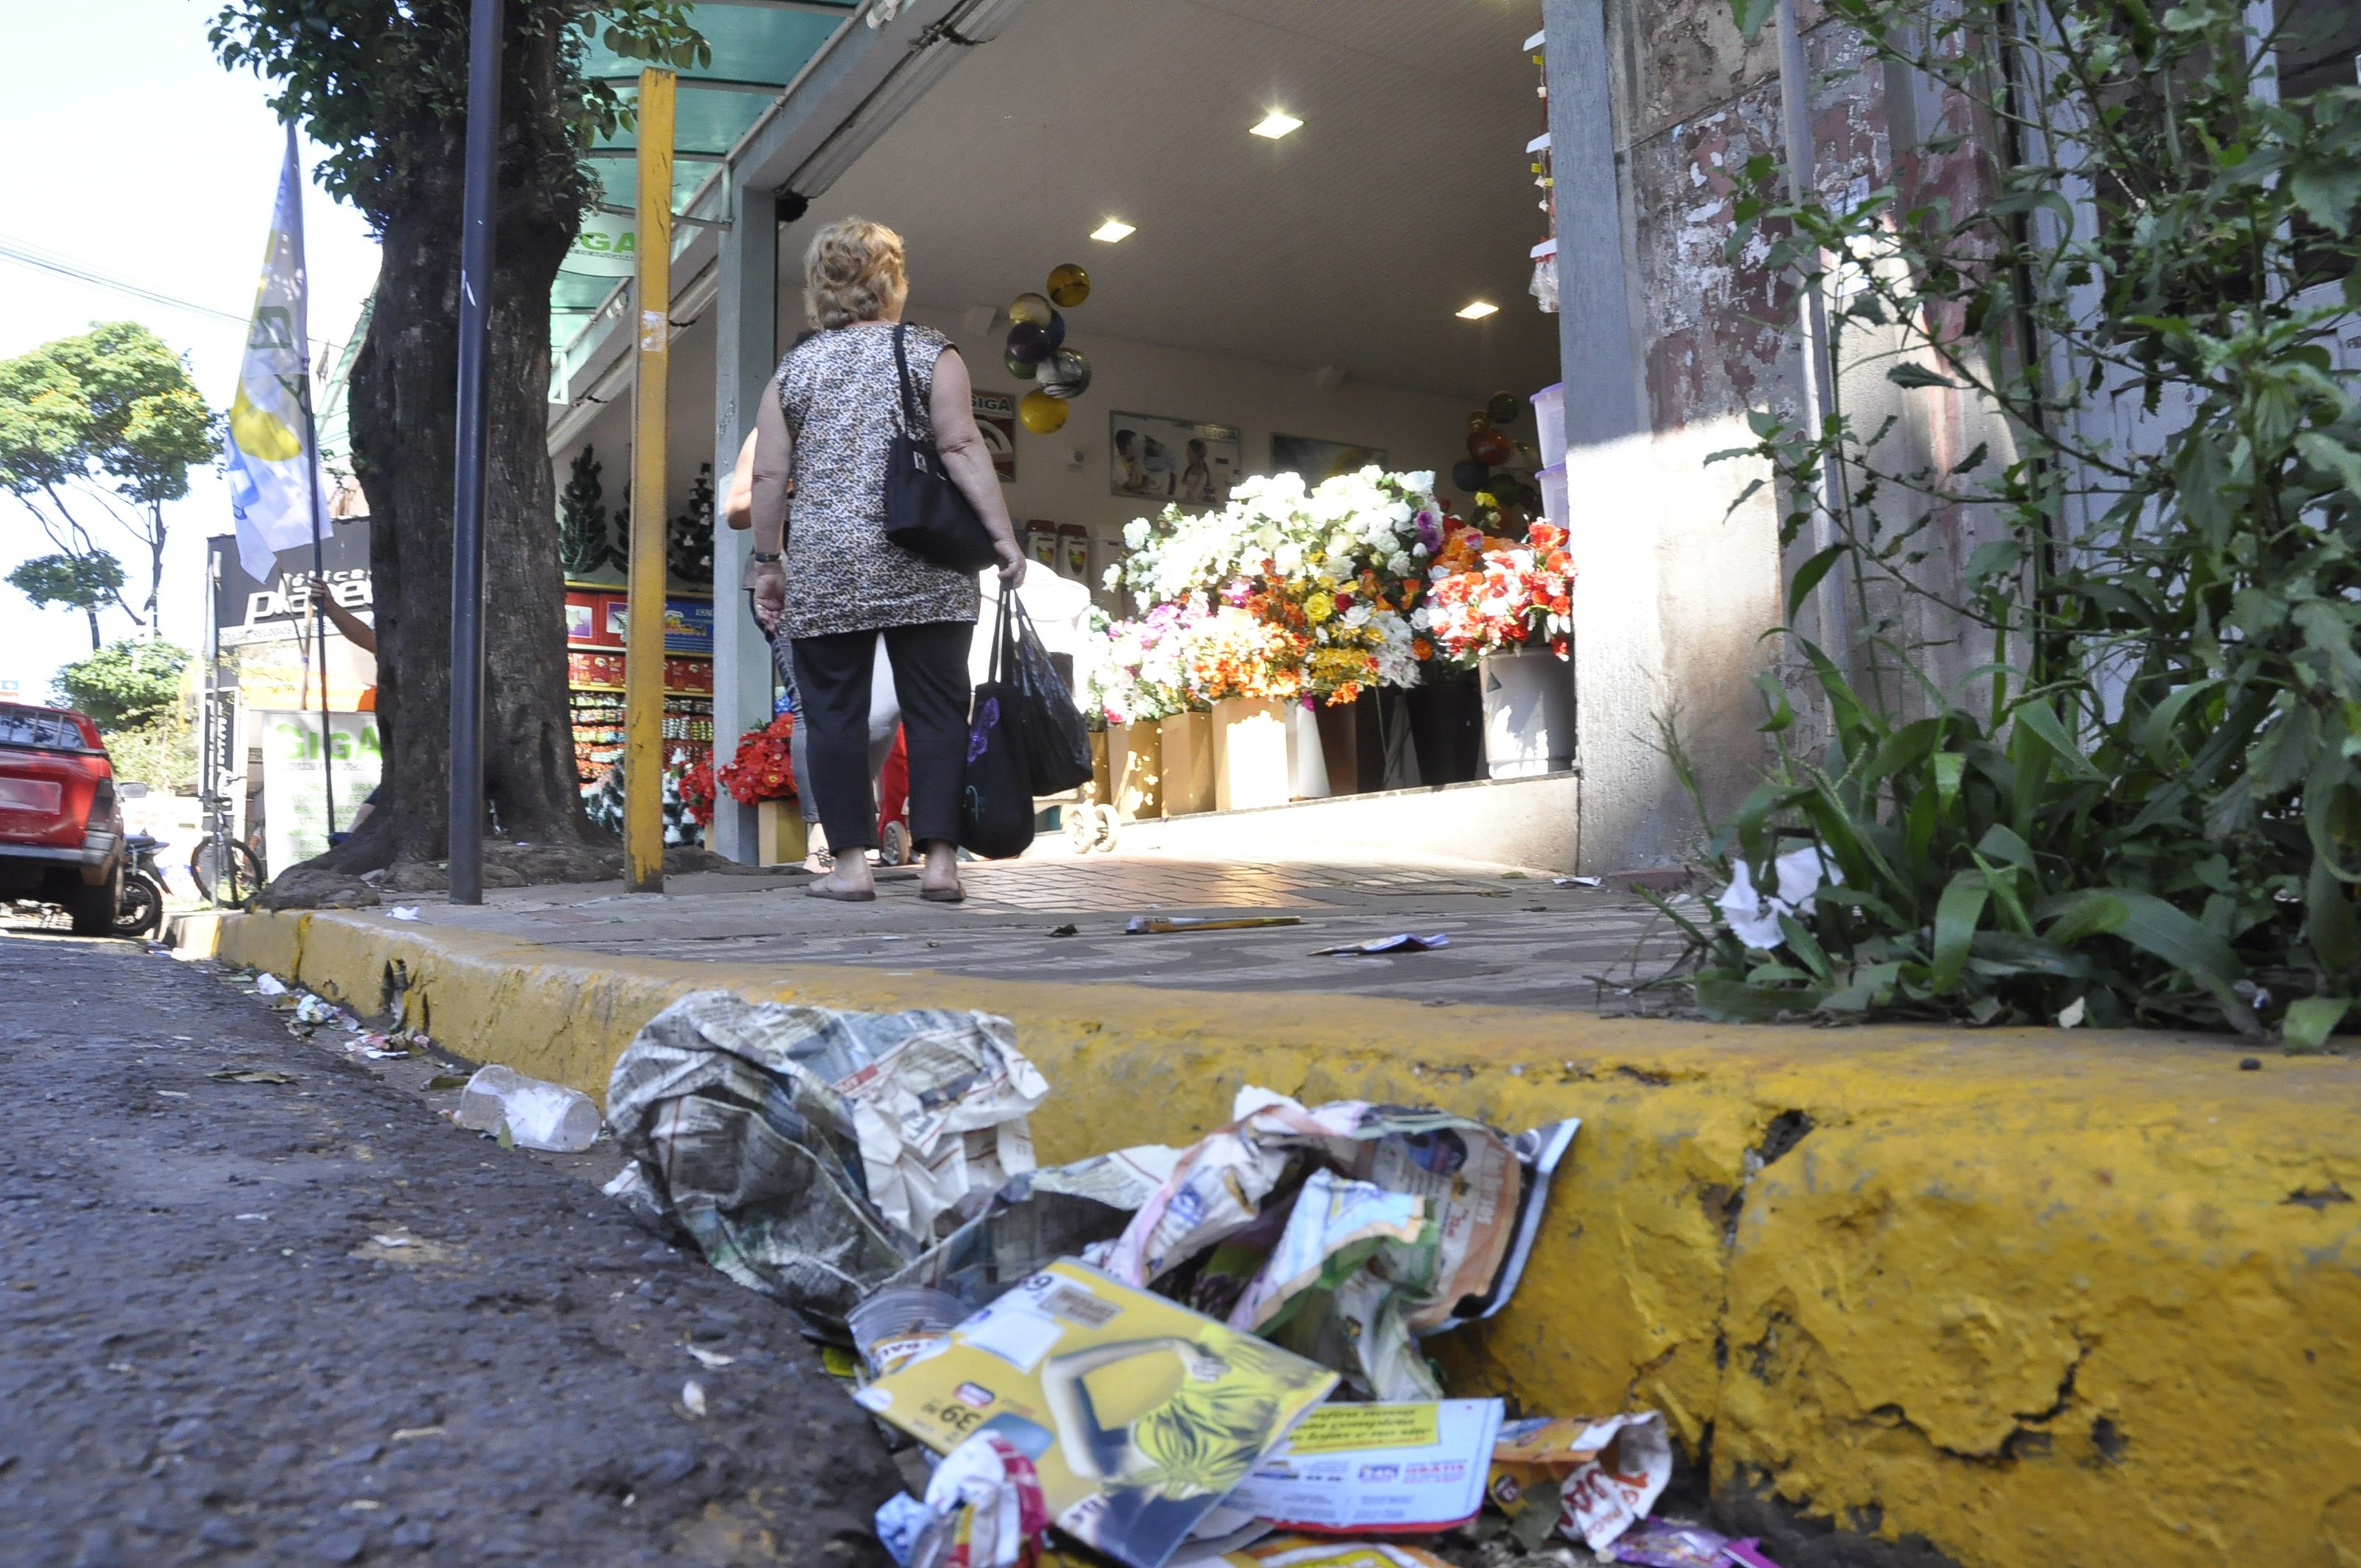 Na Rua Ponta Grossa, sarjeta acumula lixo próximo a ponto de ônibus